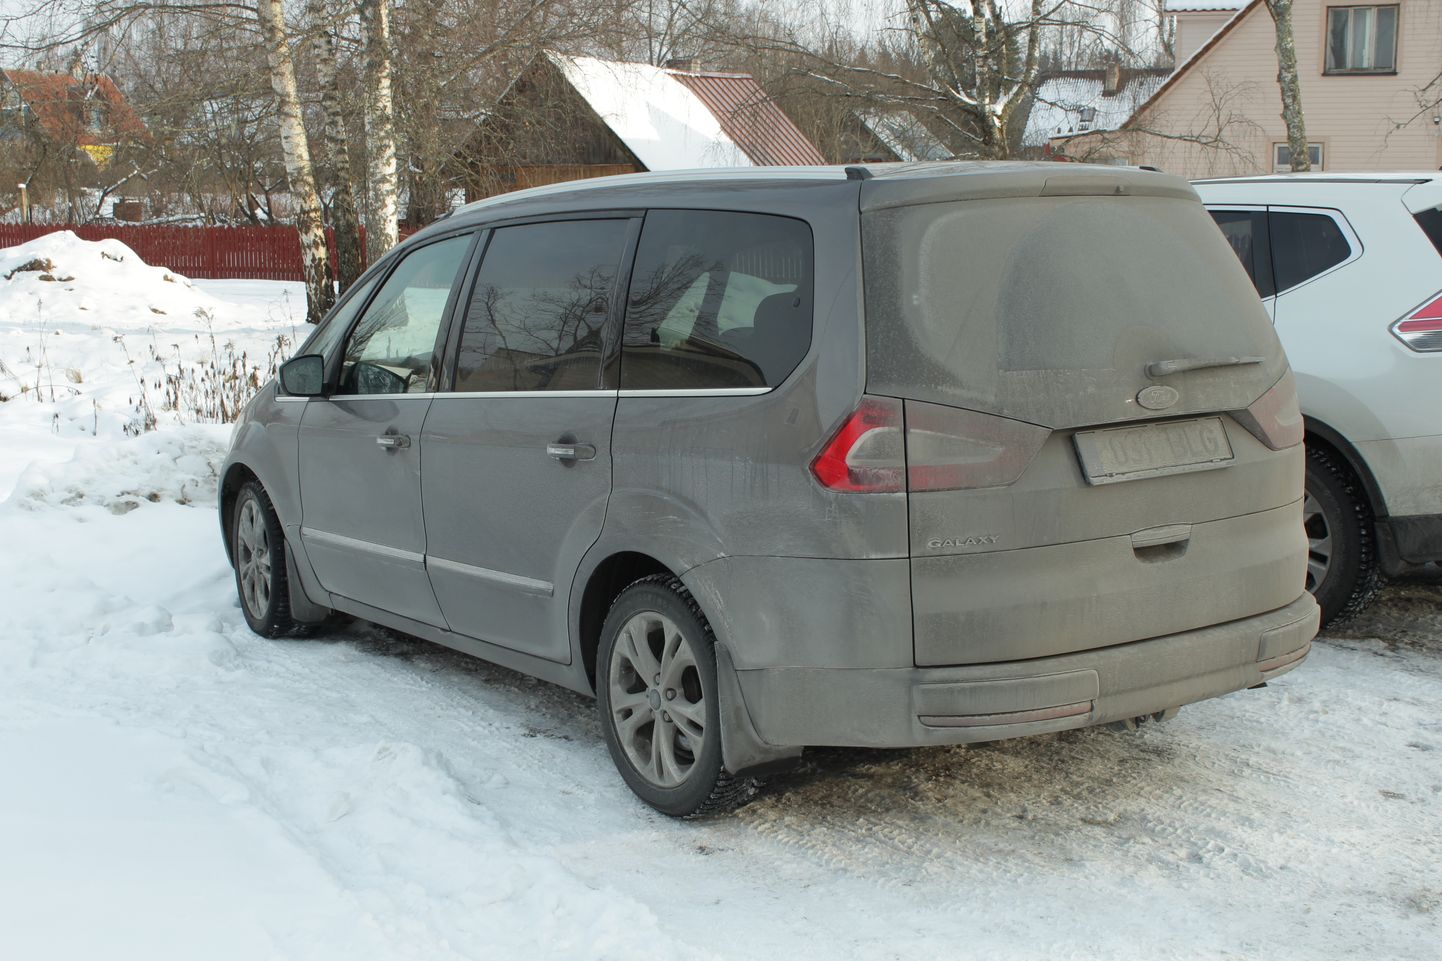 Tõrva vallavanema Maido Ruusmanni käsutuses olev Ford Galaxy on Lõuna-Eesti omavalitsusjuhtide ametiautodest 147kilovatise mootoriga kõige võimsam ja täidab aeg-ajalt ka valla bussi rolli.